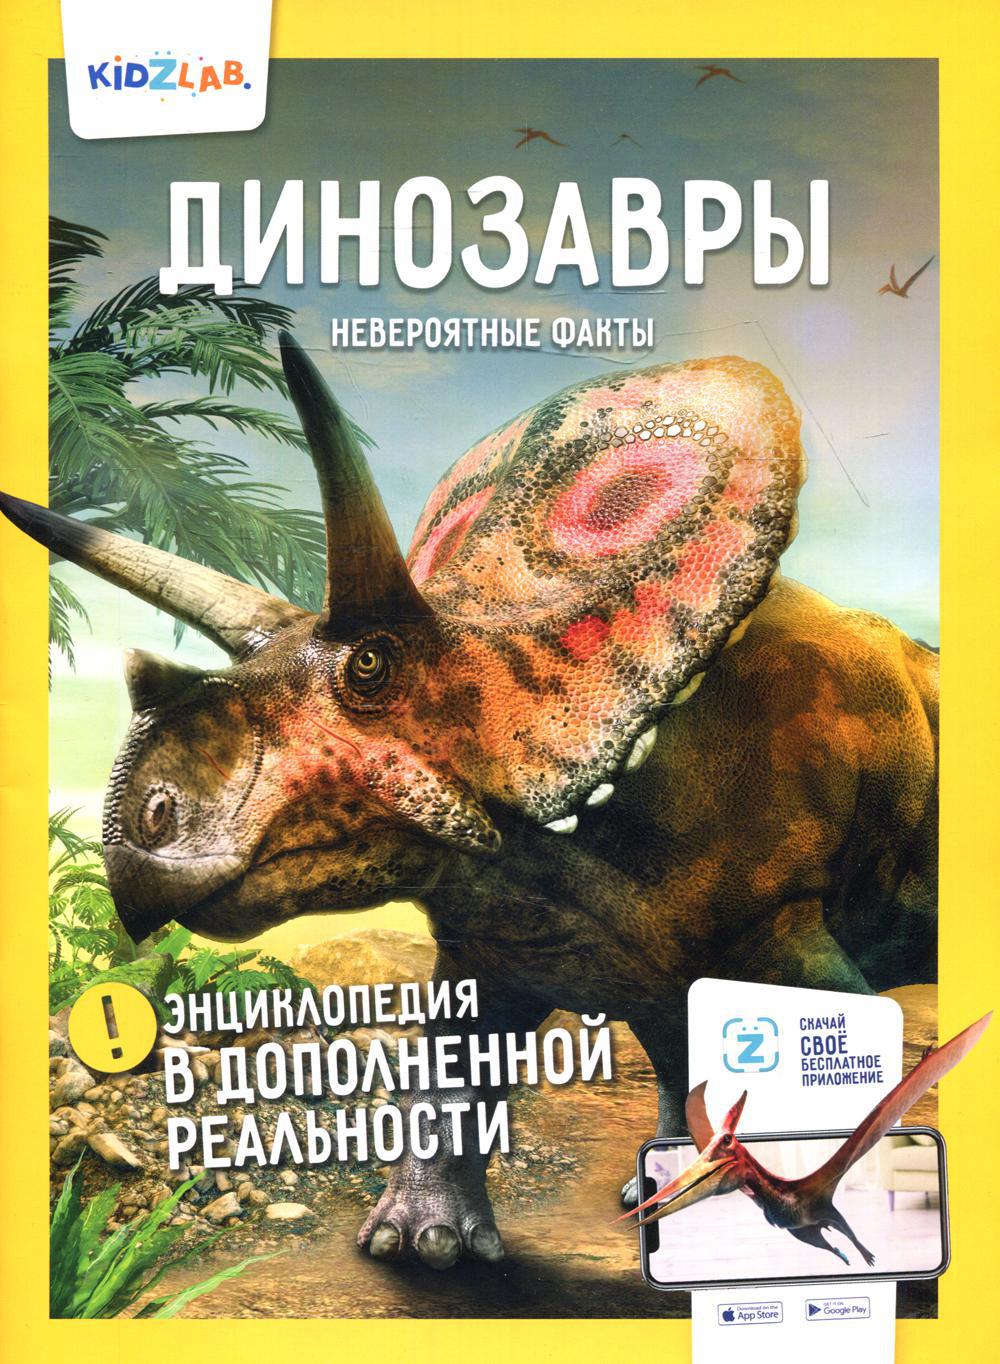 Энциклопедия в дополненной реальности: «Динозавры. Невероятные факты»